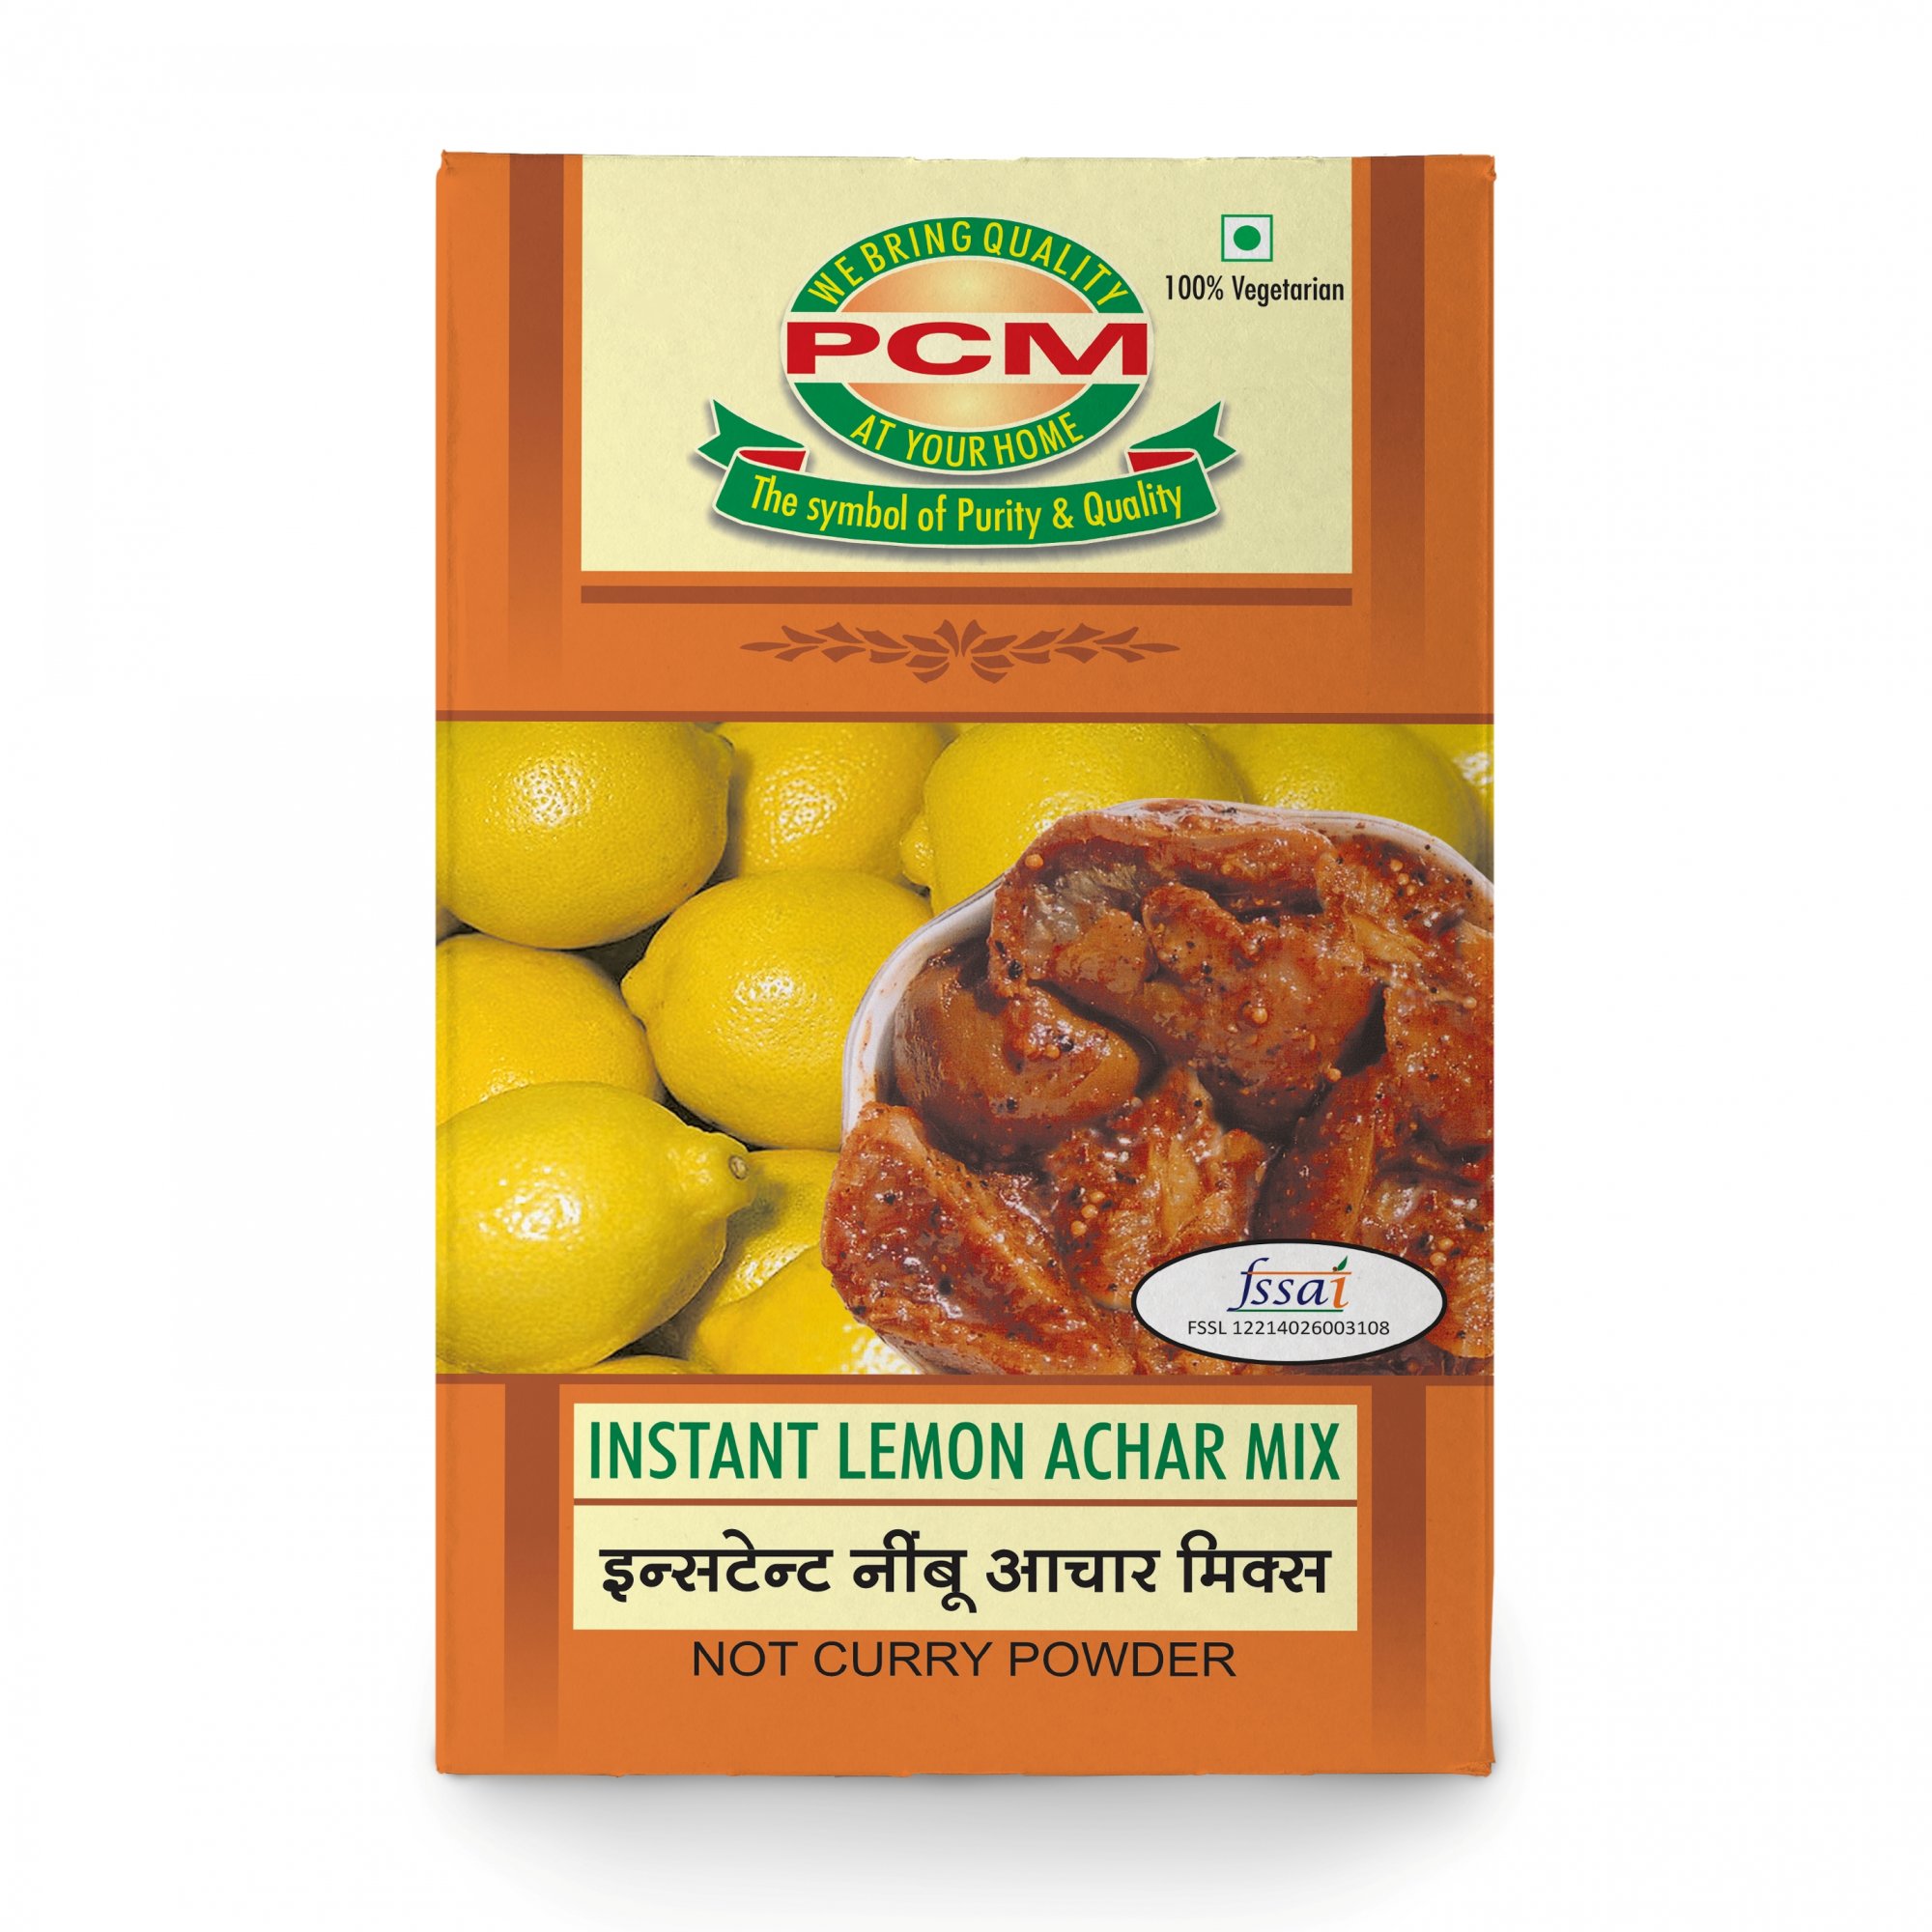 Instant Lemon Achar Mix